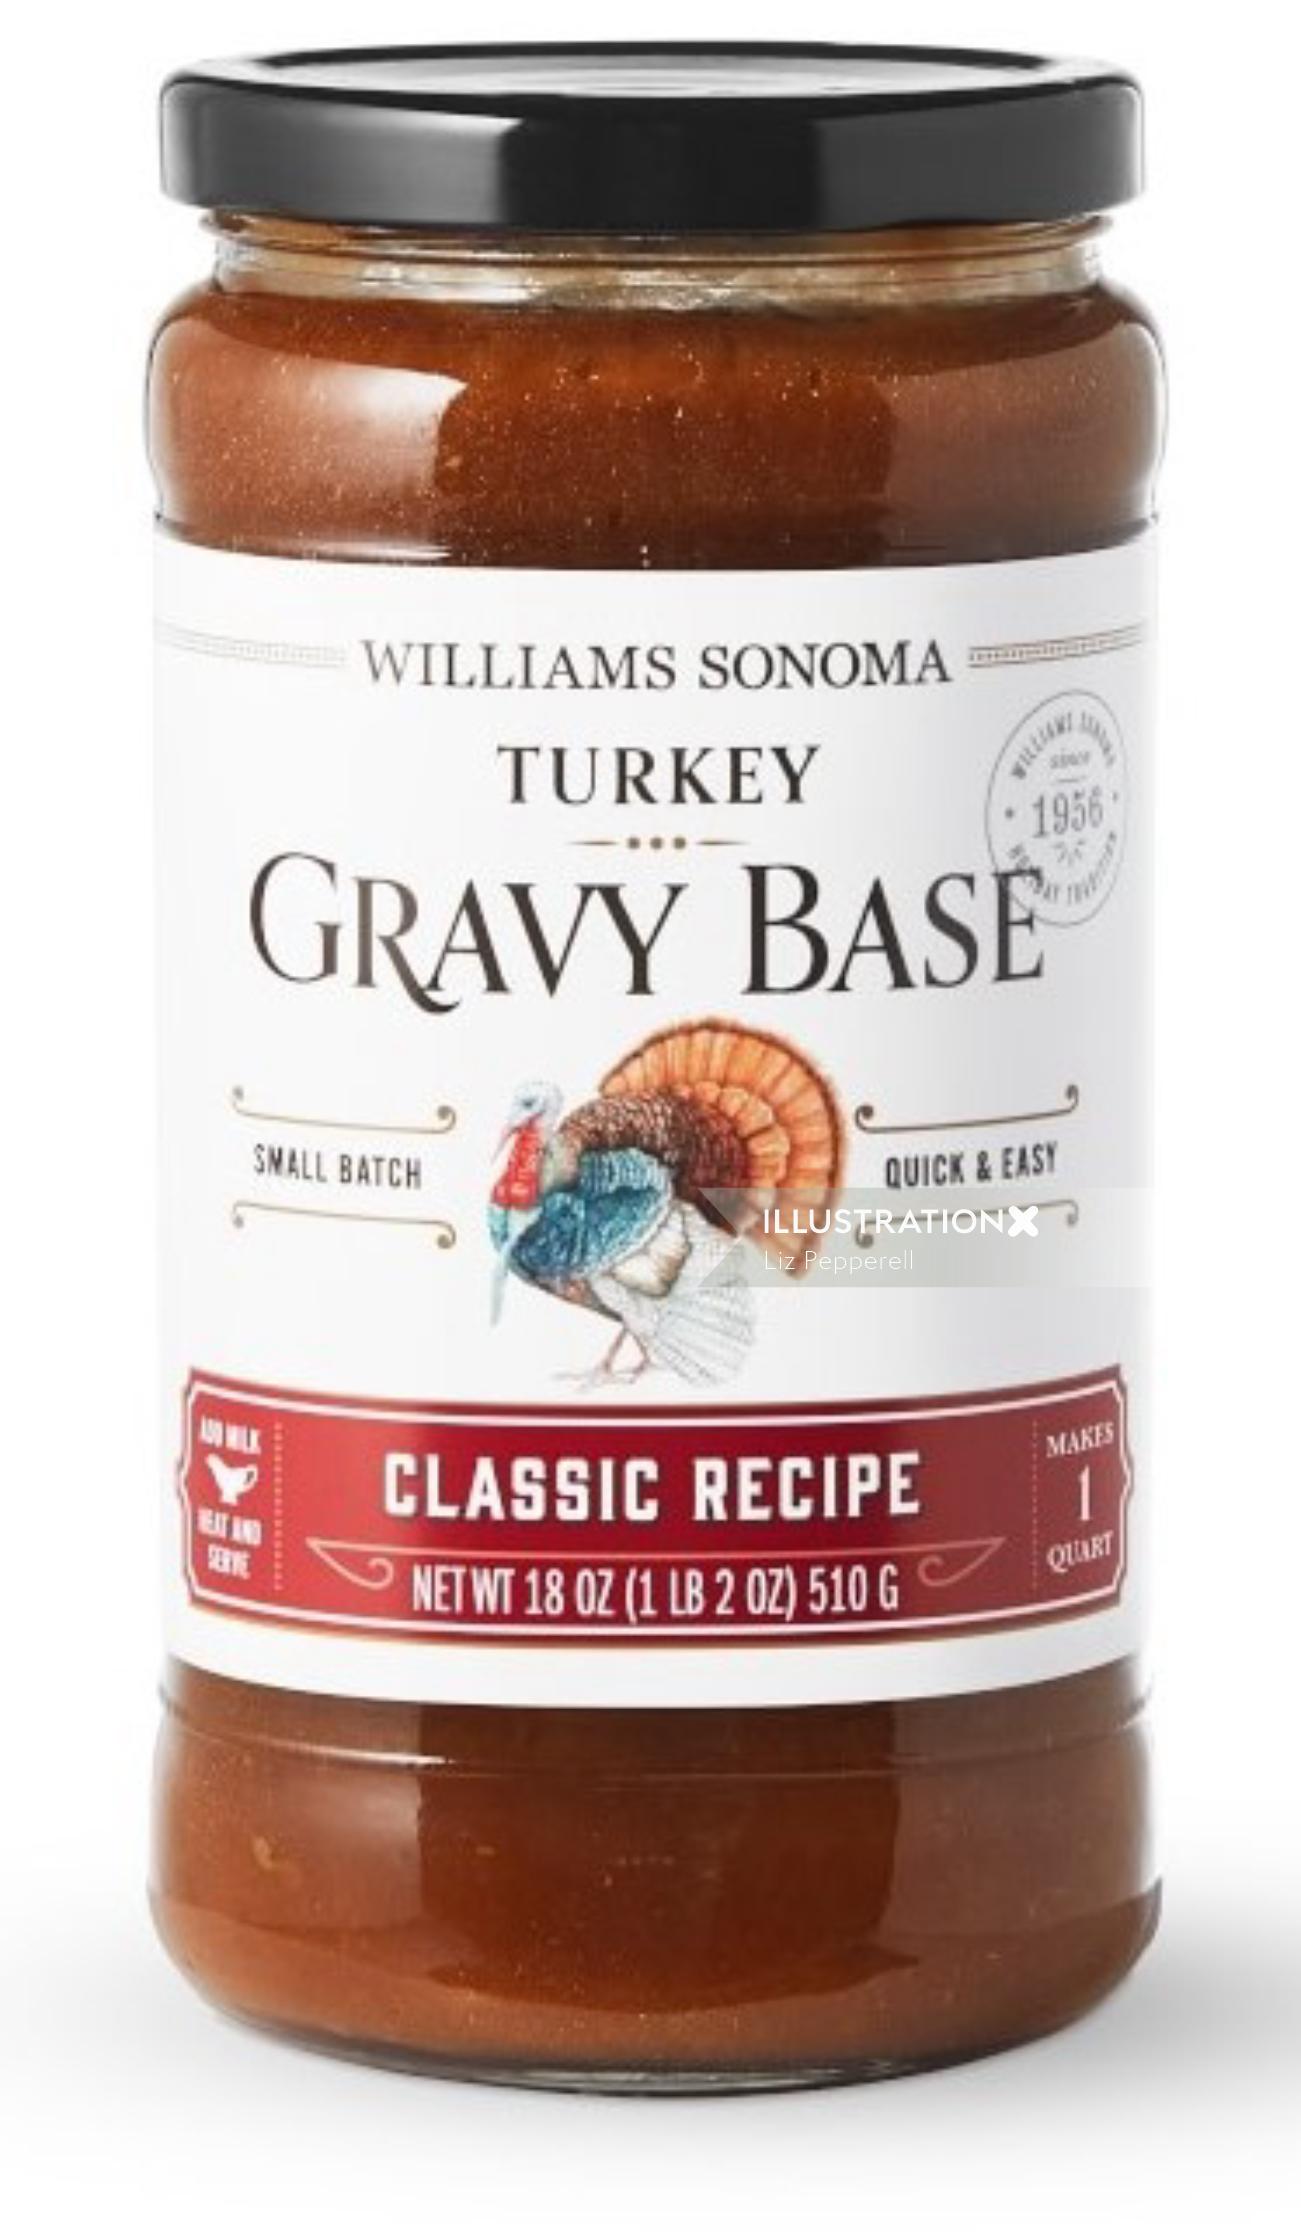 Food packaging illustration of Turkey gravy